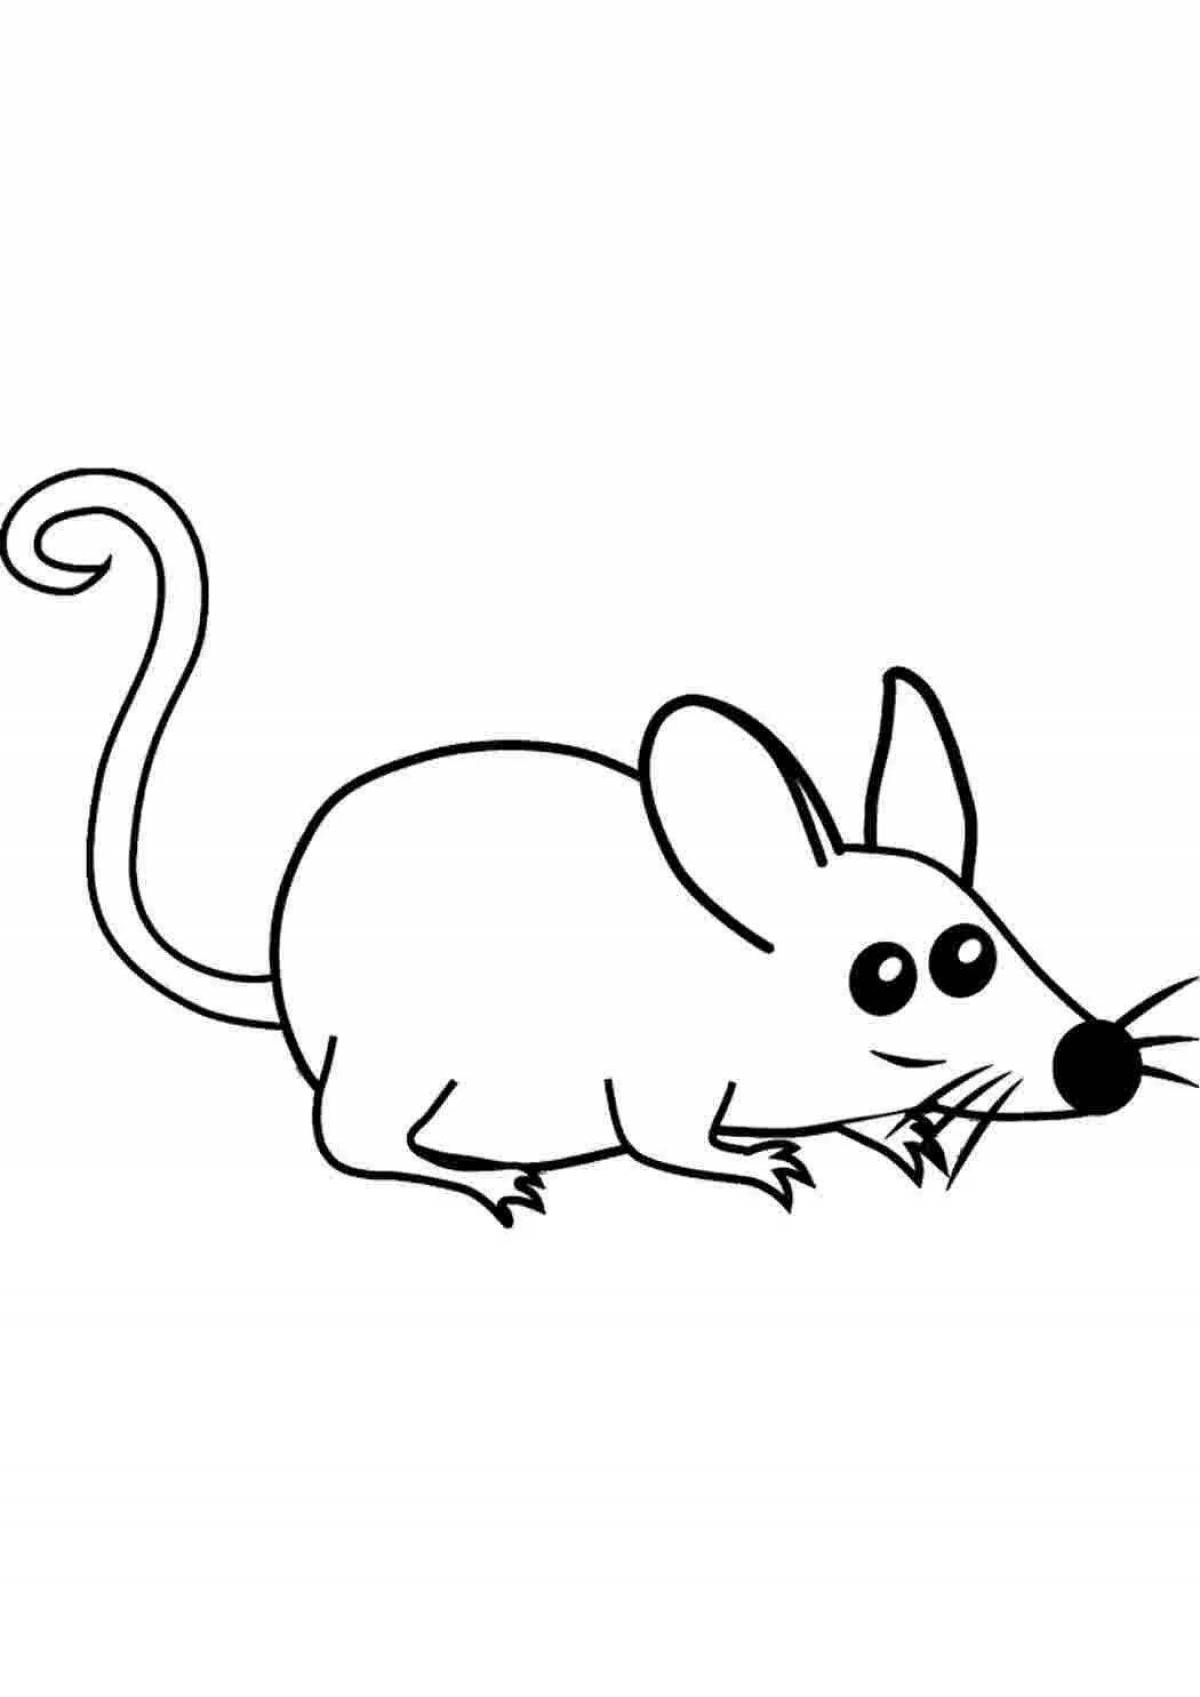 Милая раскраска мышь для детей 3-4 лет